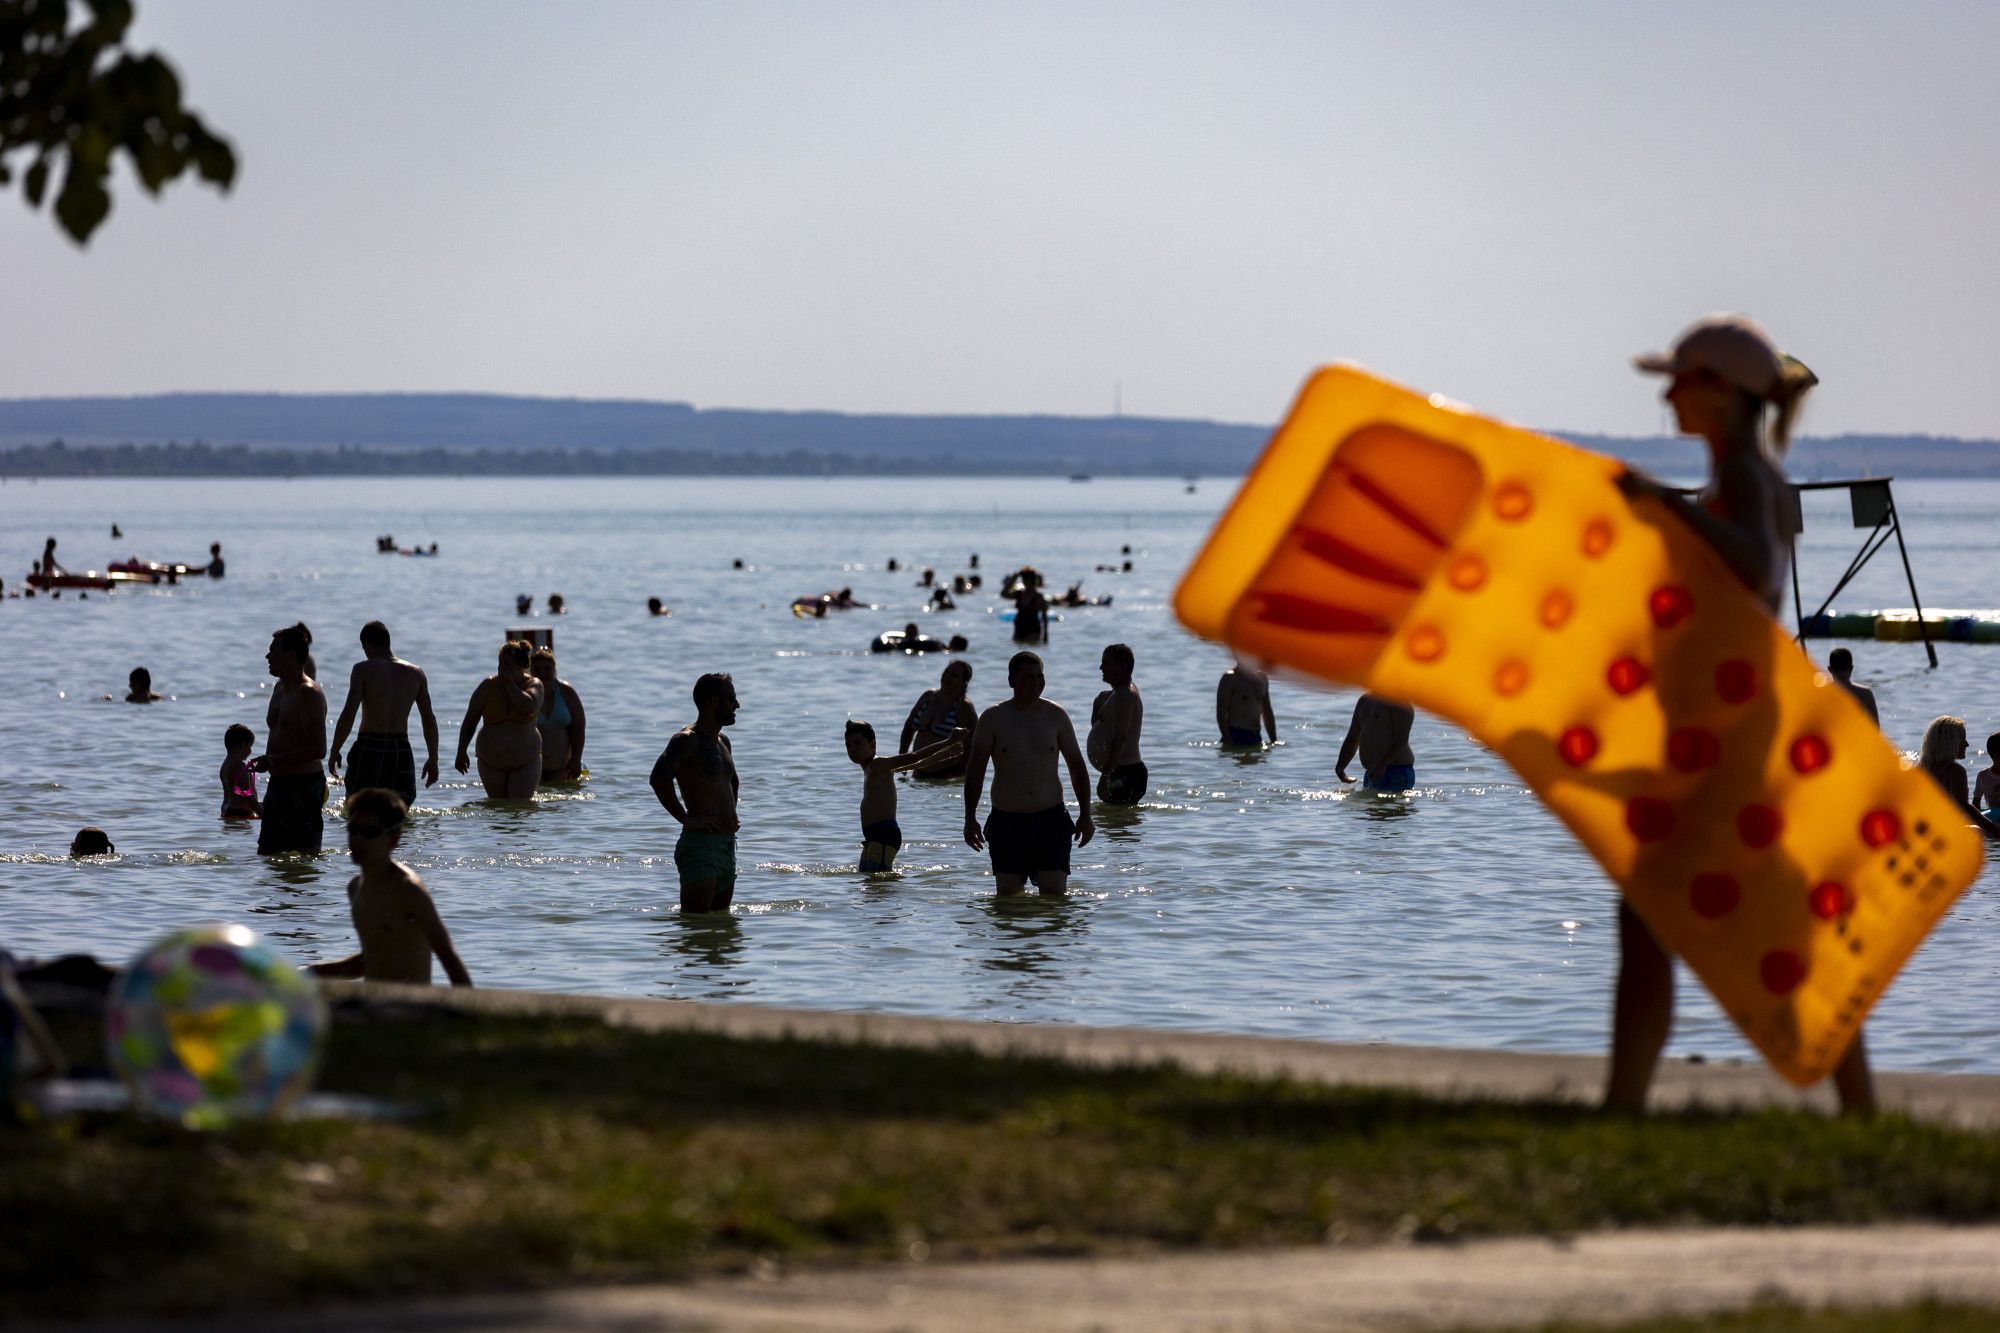 Fürdõzõk a Balatonban Fonyódnál, a bélatelepi strandon 2022. július 21-én